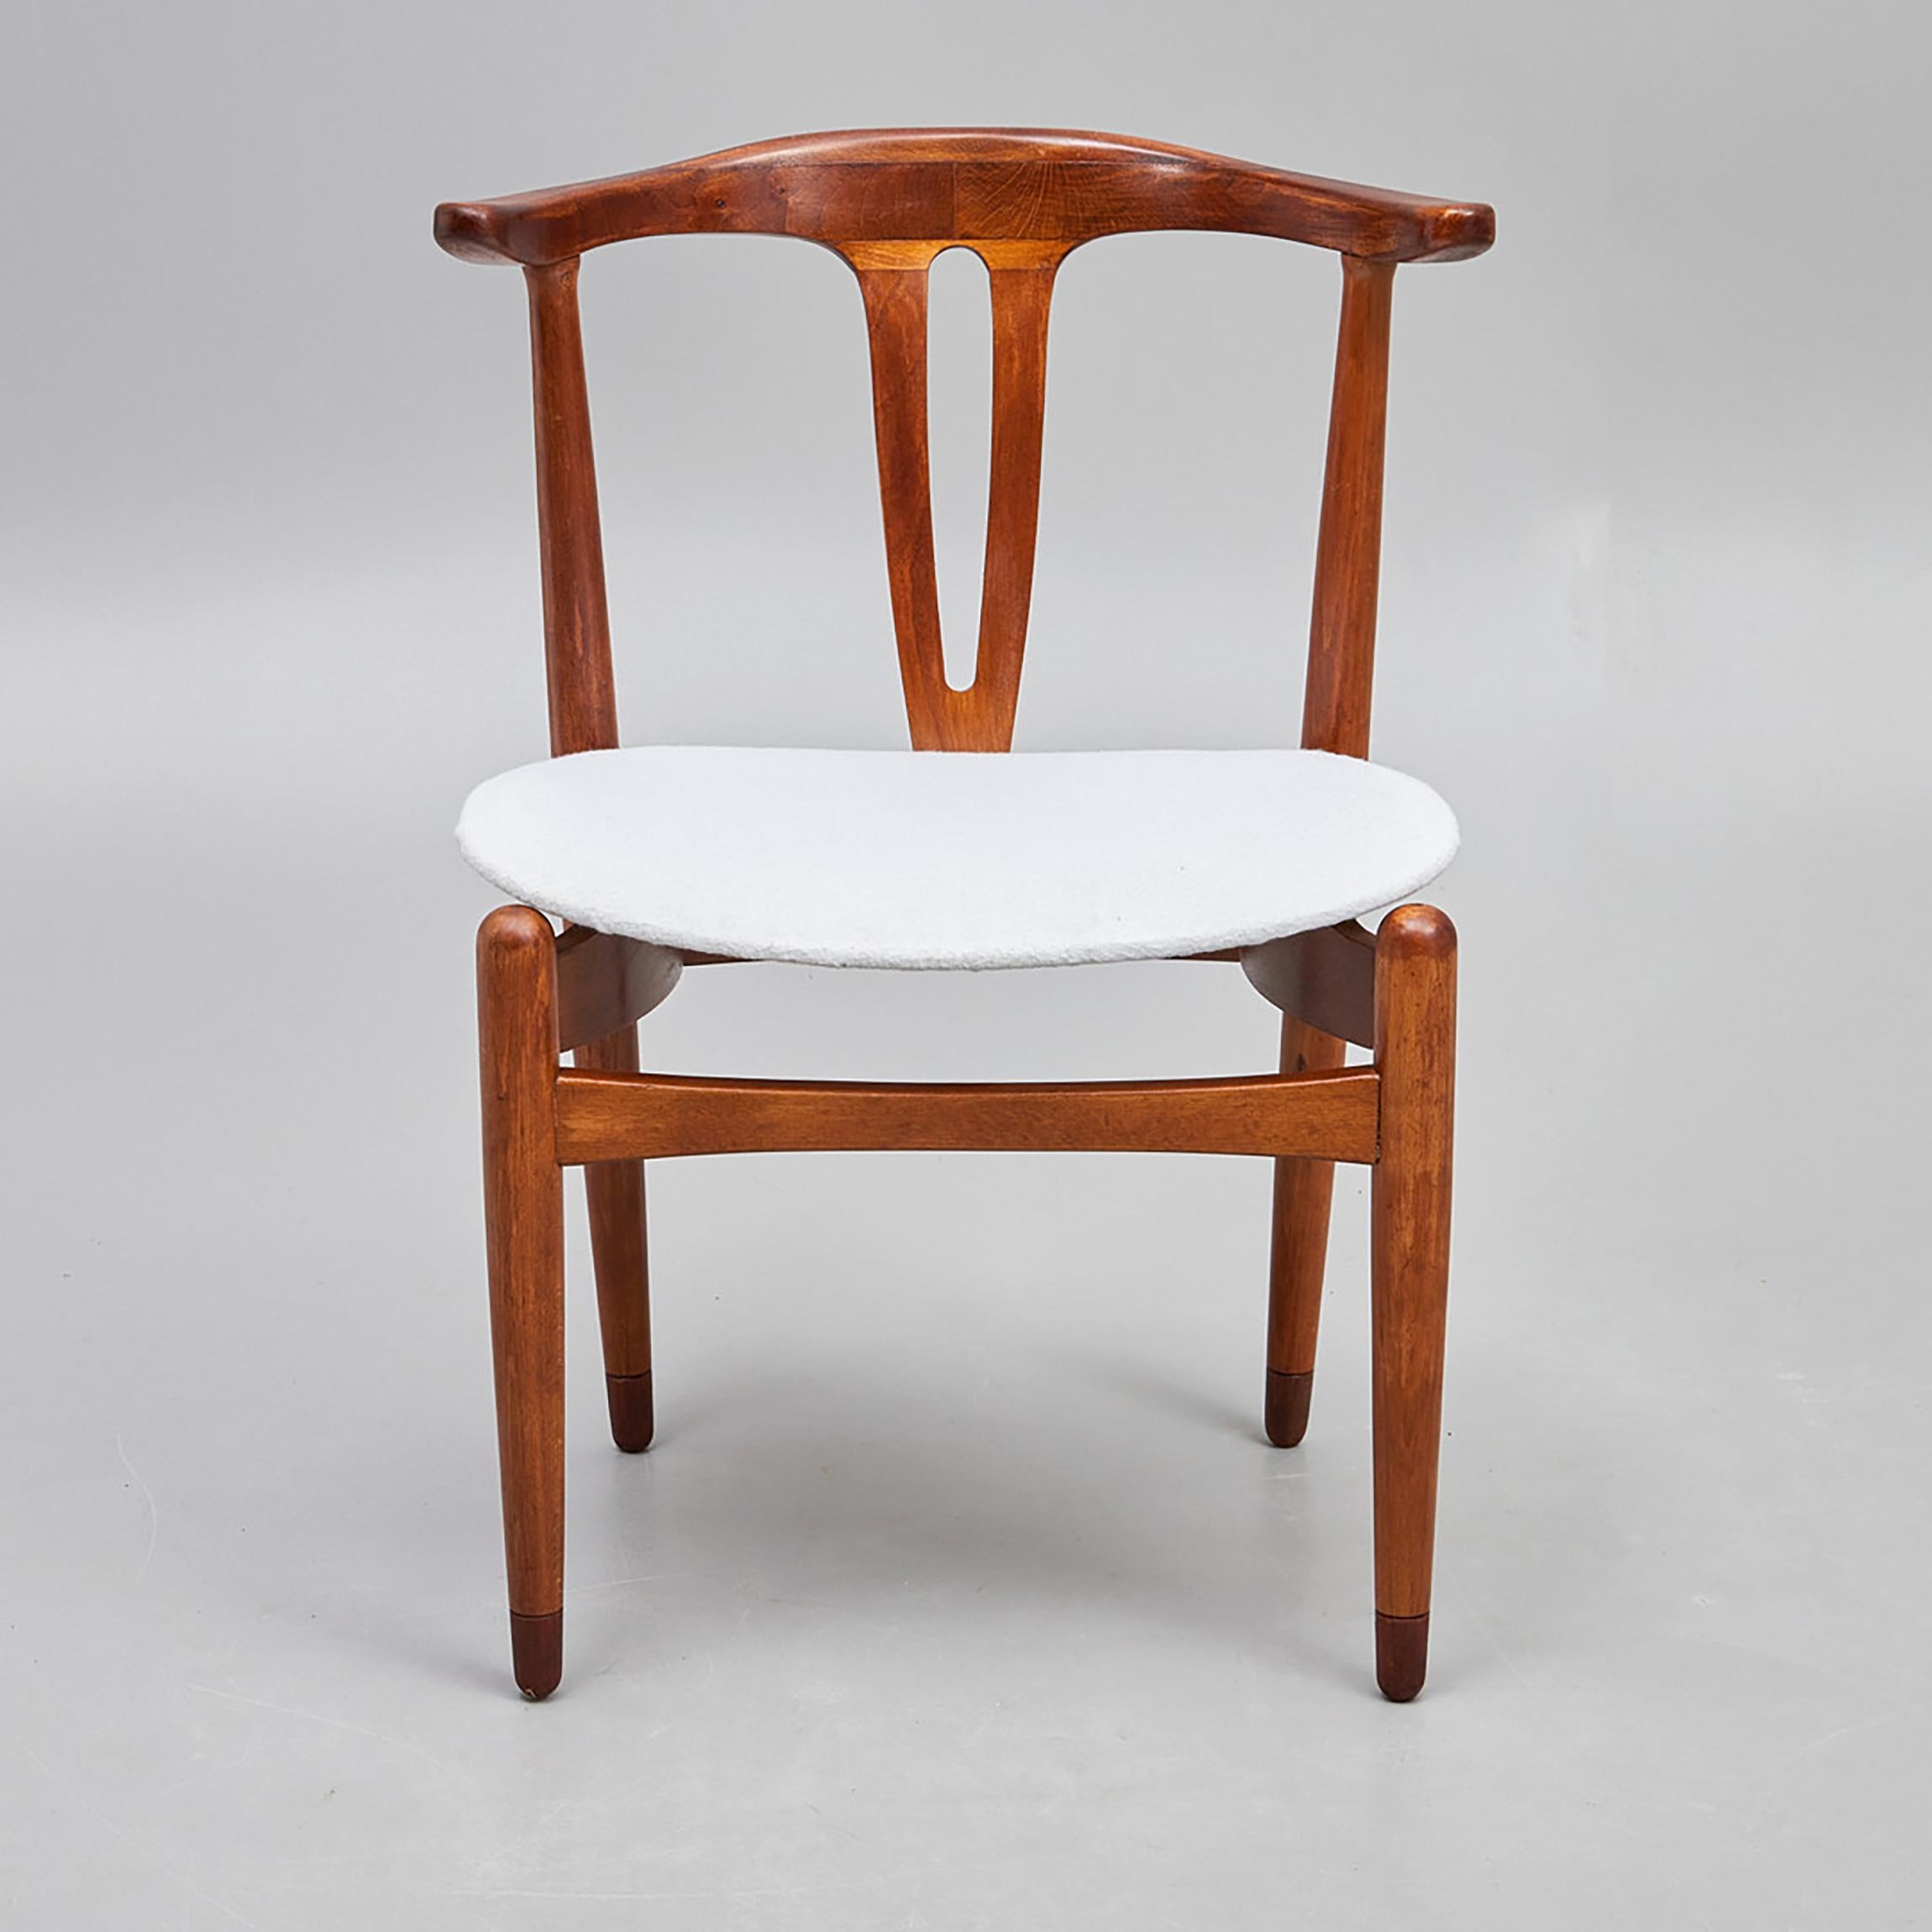 Hardwood frame, upholstered seat. Made in Denmark in the 1950s.